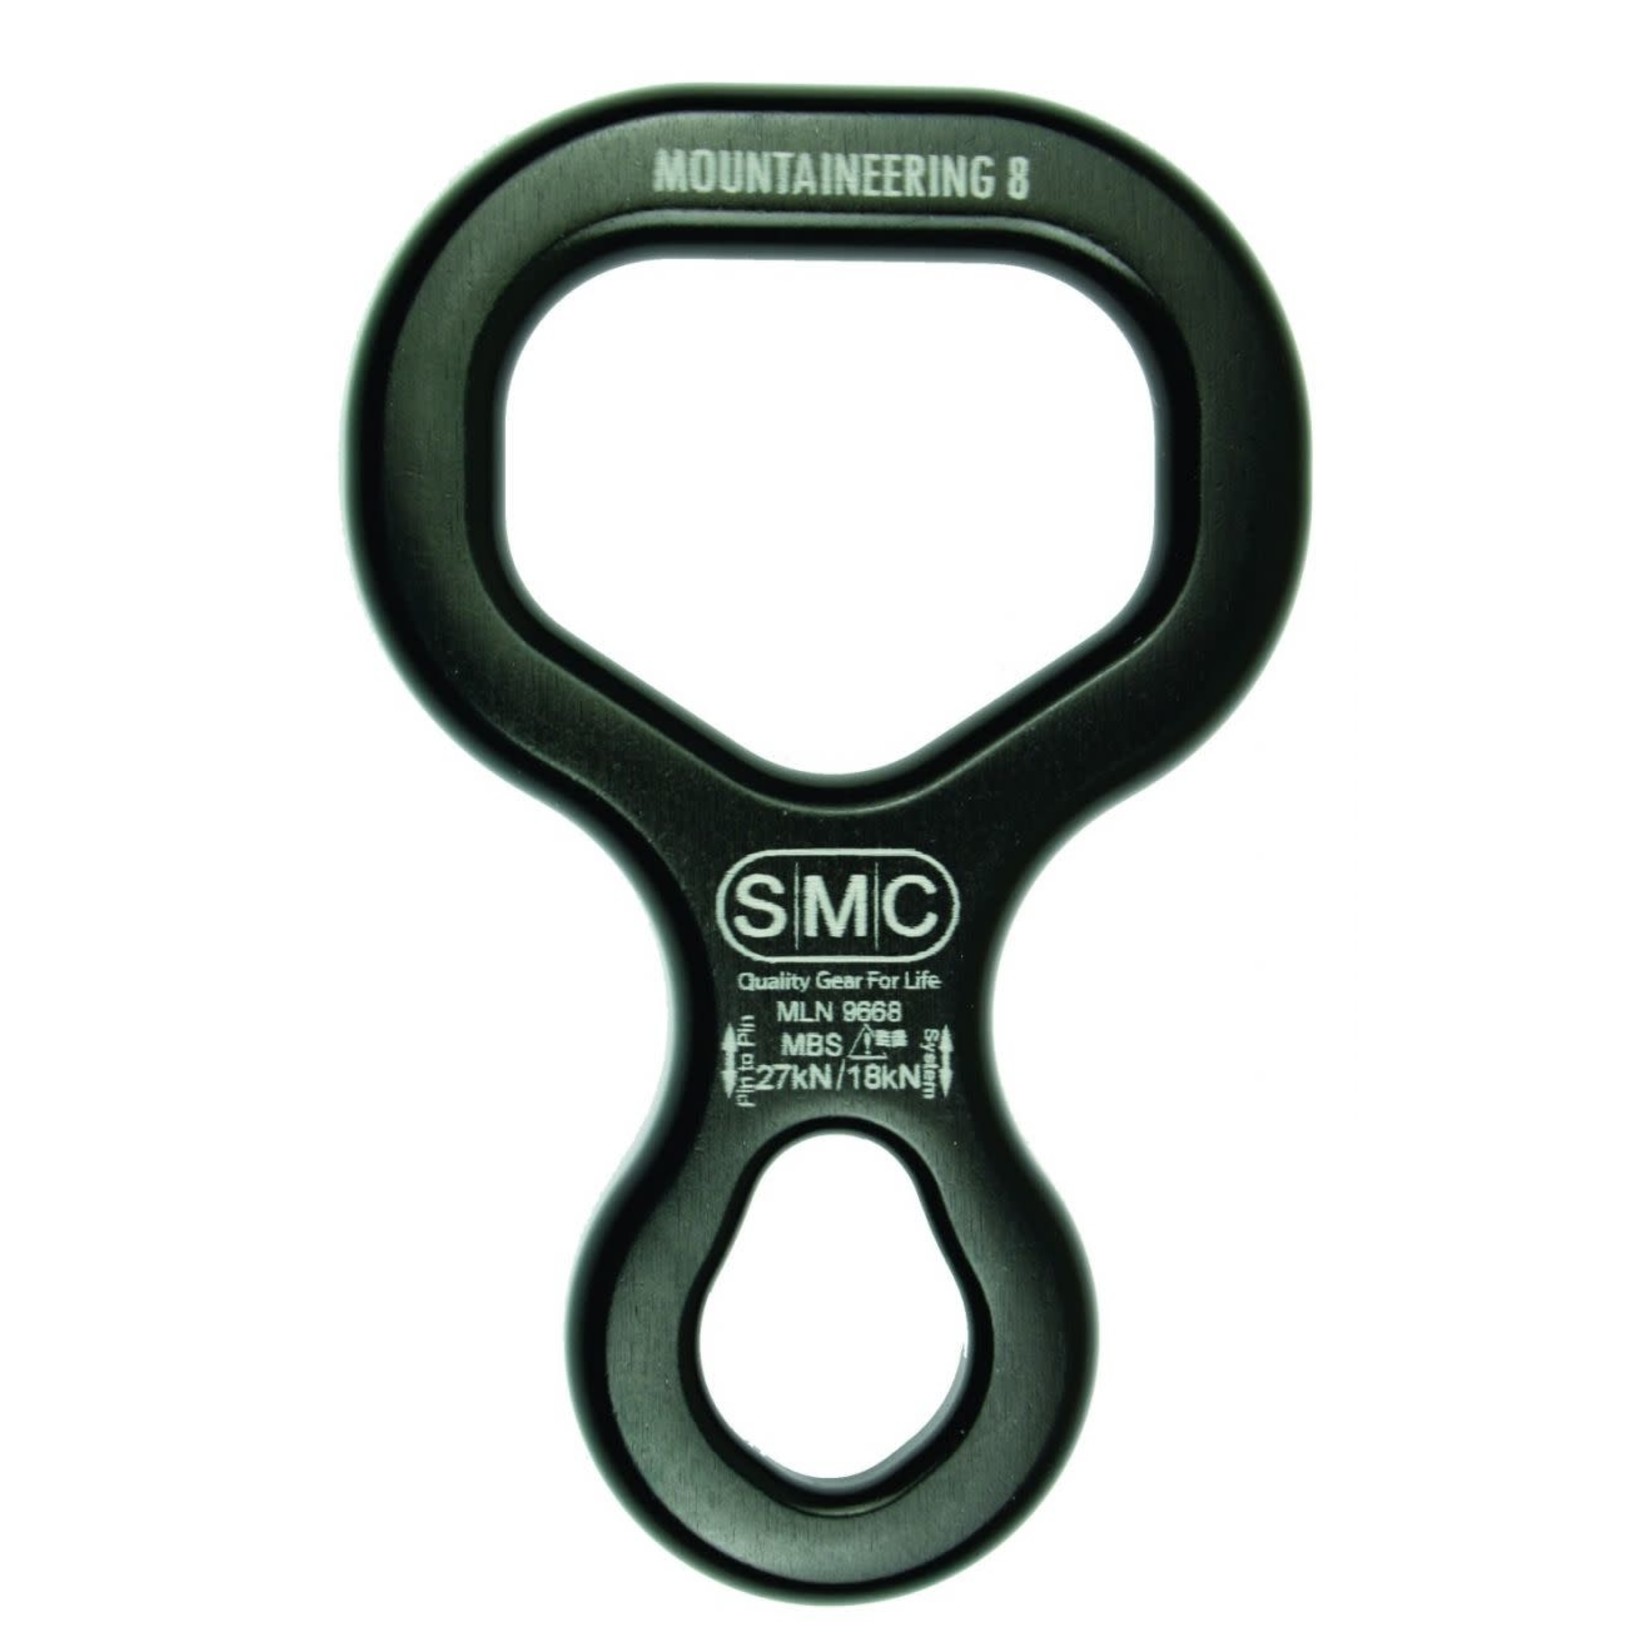 SMC SMC Mountaineering 8